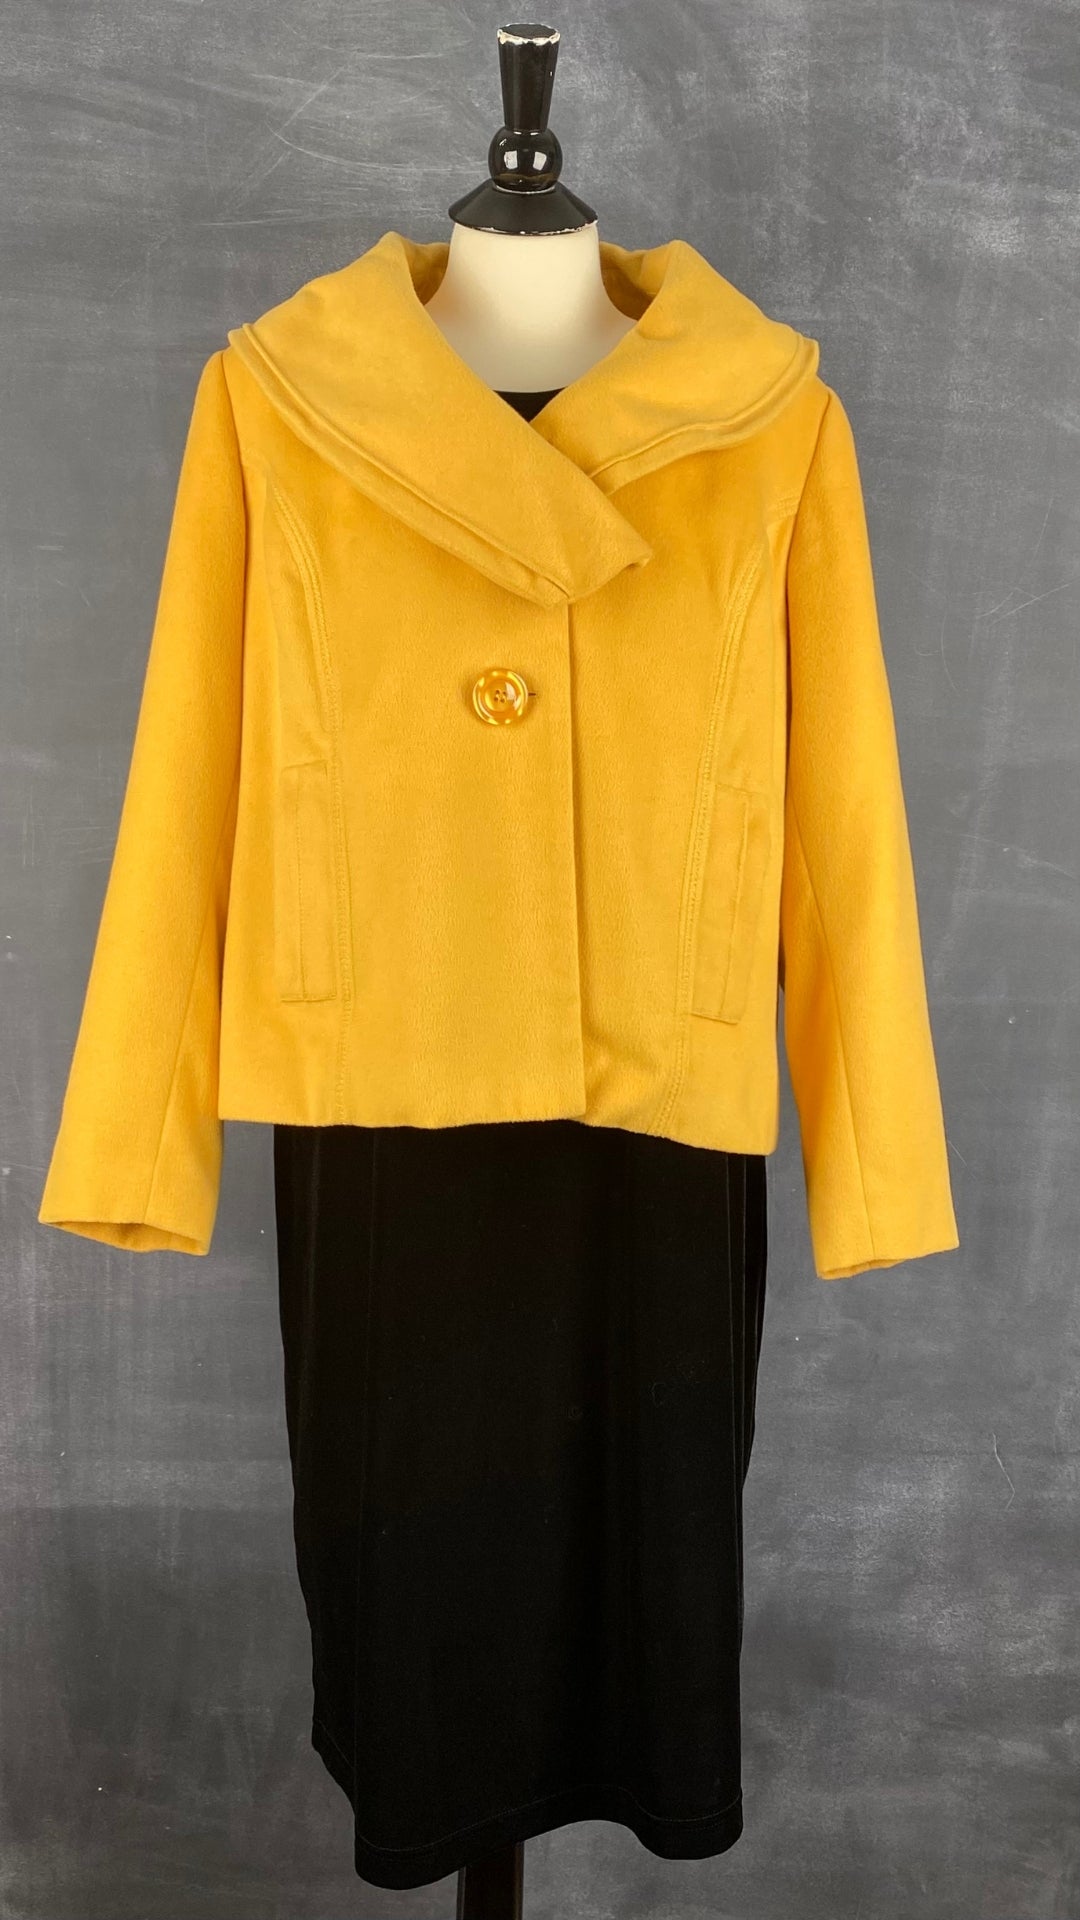 Robe velours noire sans manches Coccoli, taille l-xl. Vue de l'agencement avec la veste en laine jaune douce comme un nuage Vex.